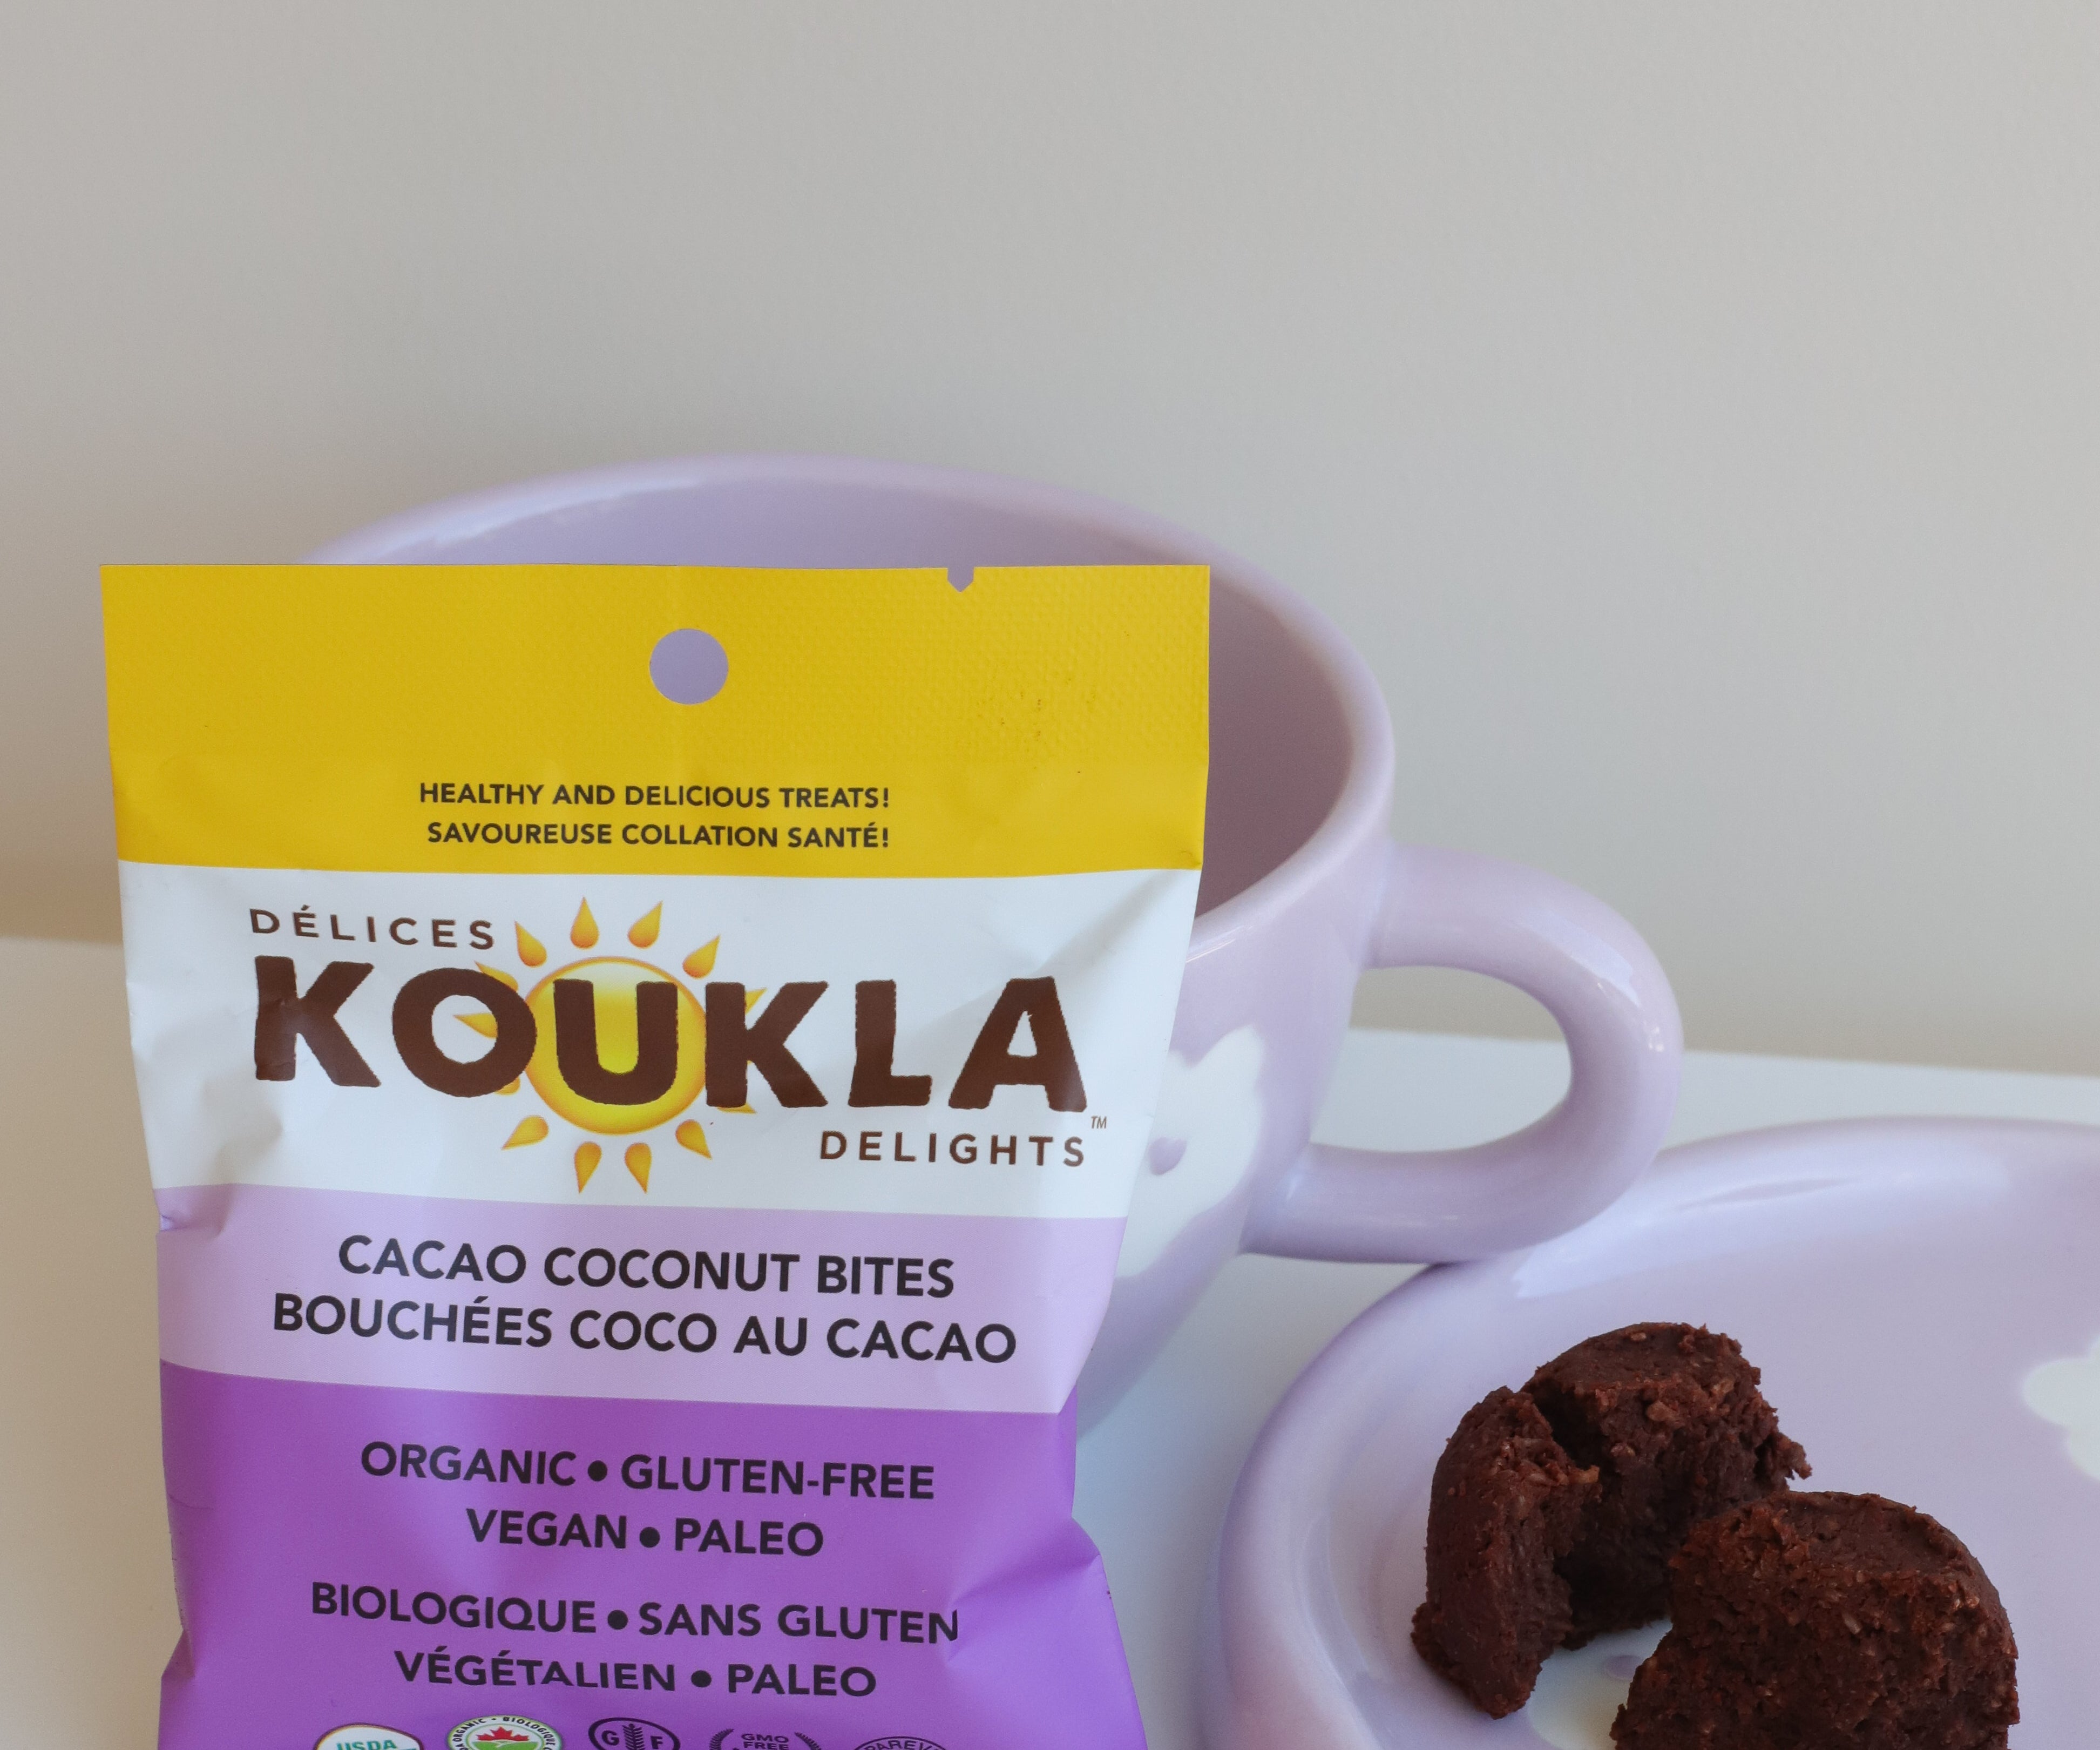 Bouchées coco au cacao - Délices Koukla